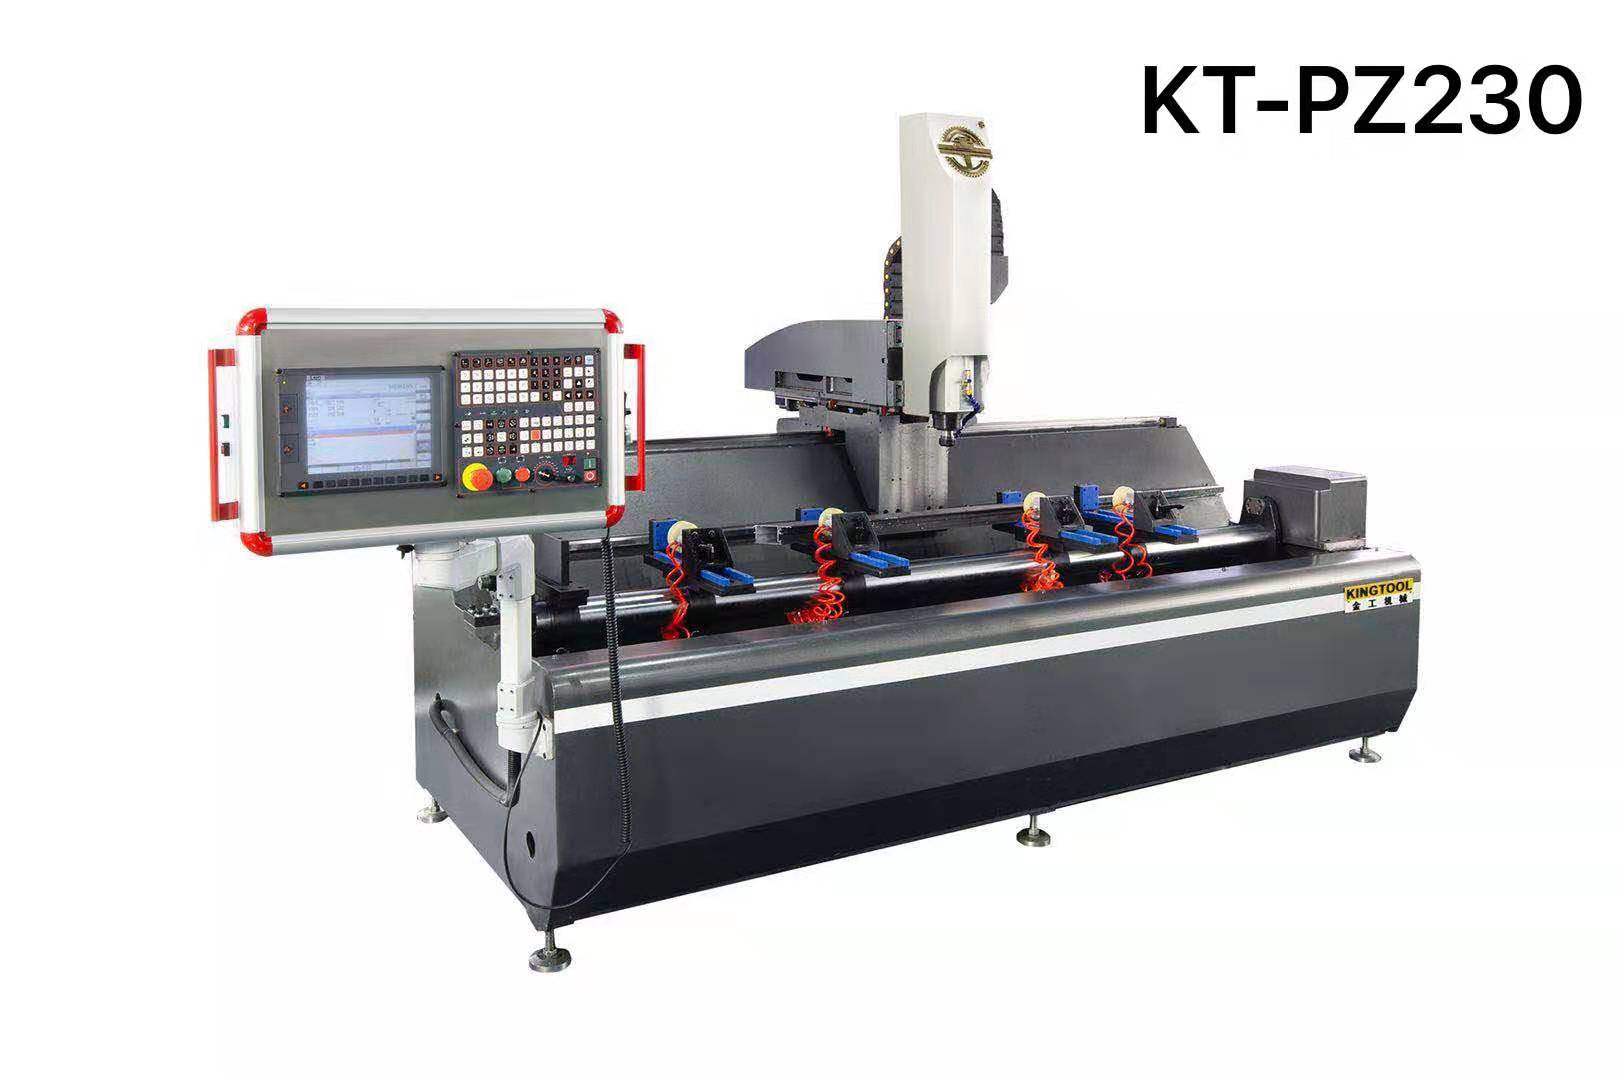 kingtool aluminium machinery Array image65